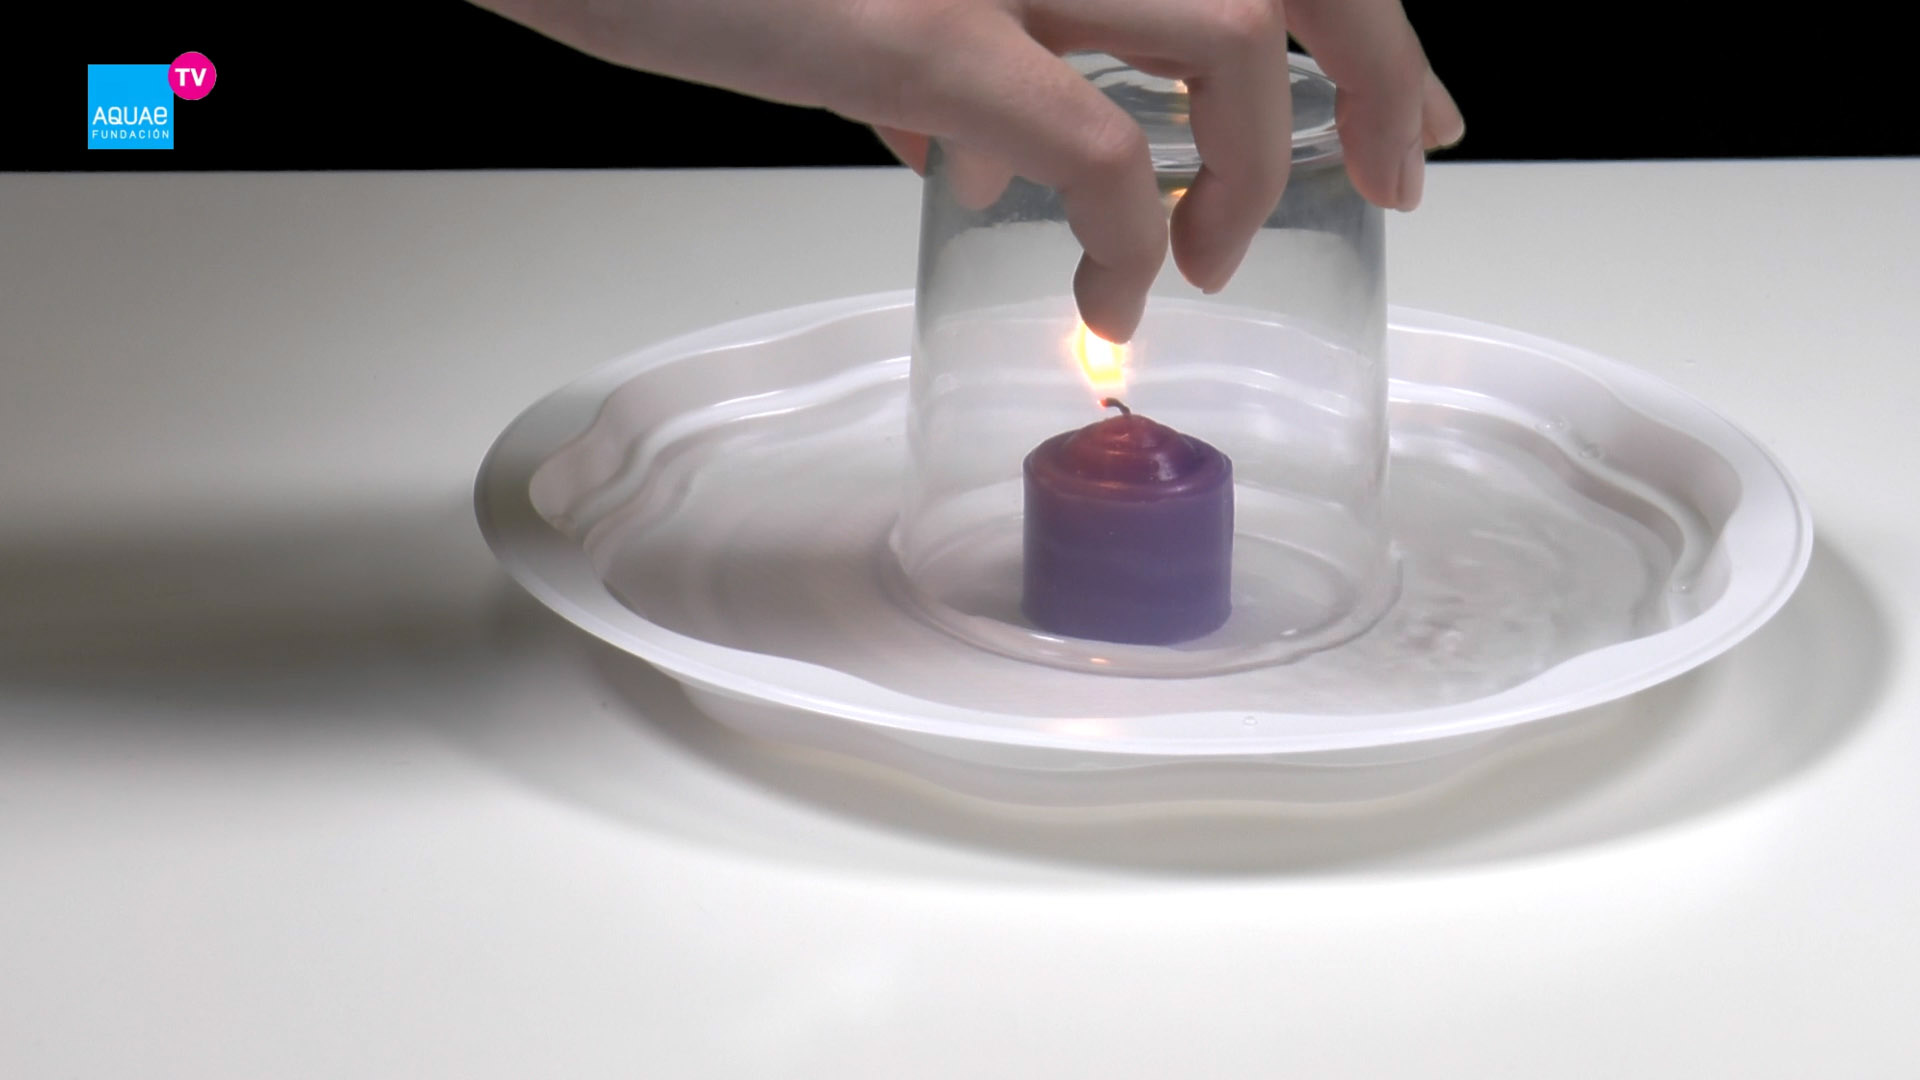 Así se pueden hacer velas caseras para tener luz durante un apagón